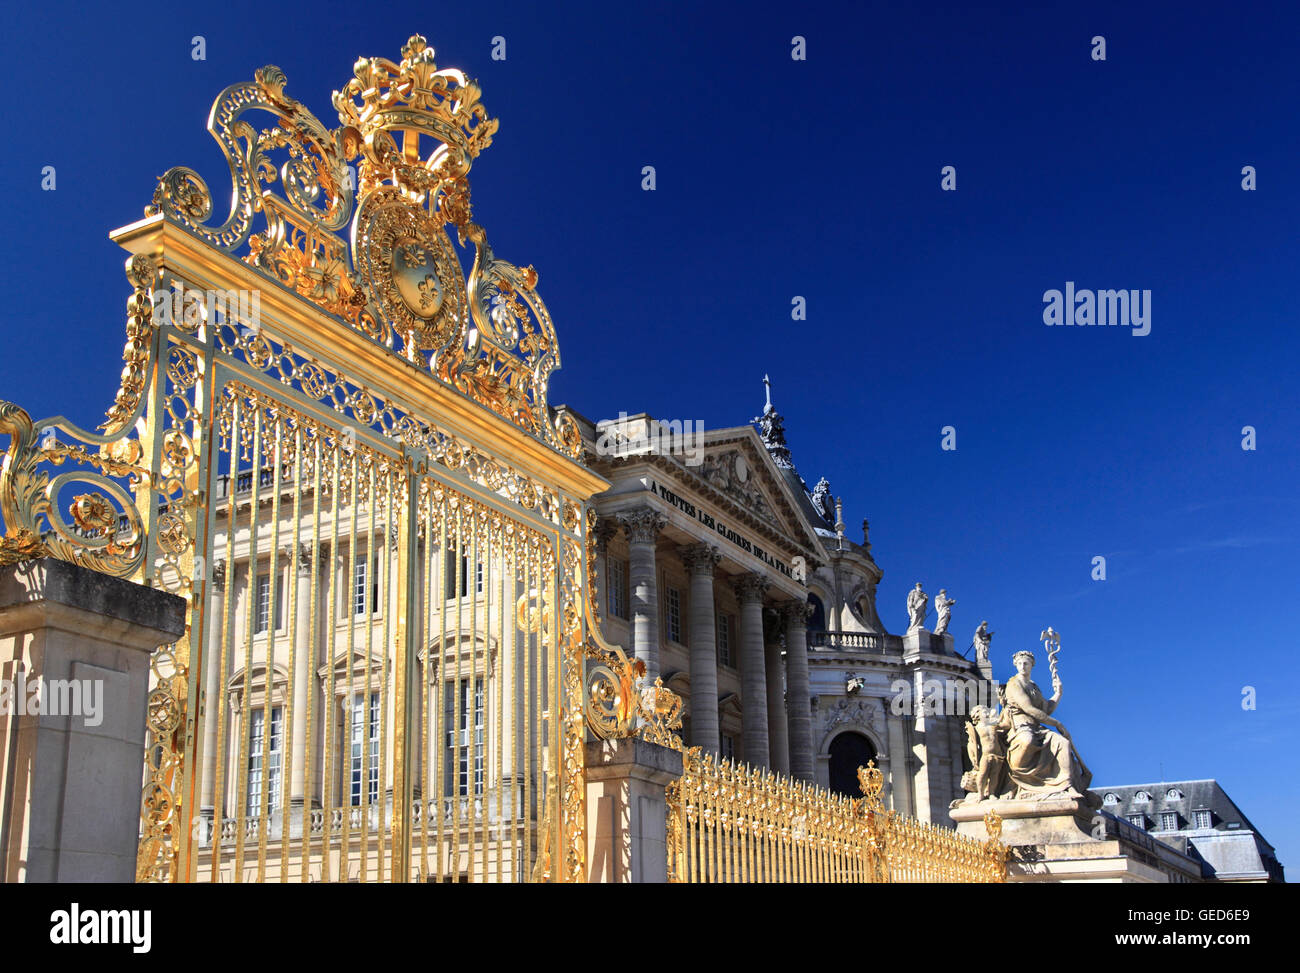 La porte d'honneur , Château de Versailles, France, Europe Banque D'Images